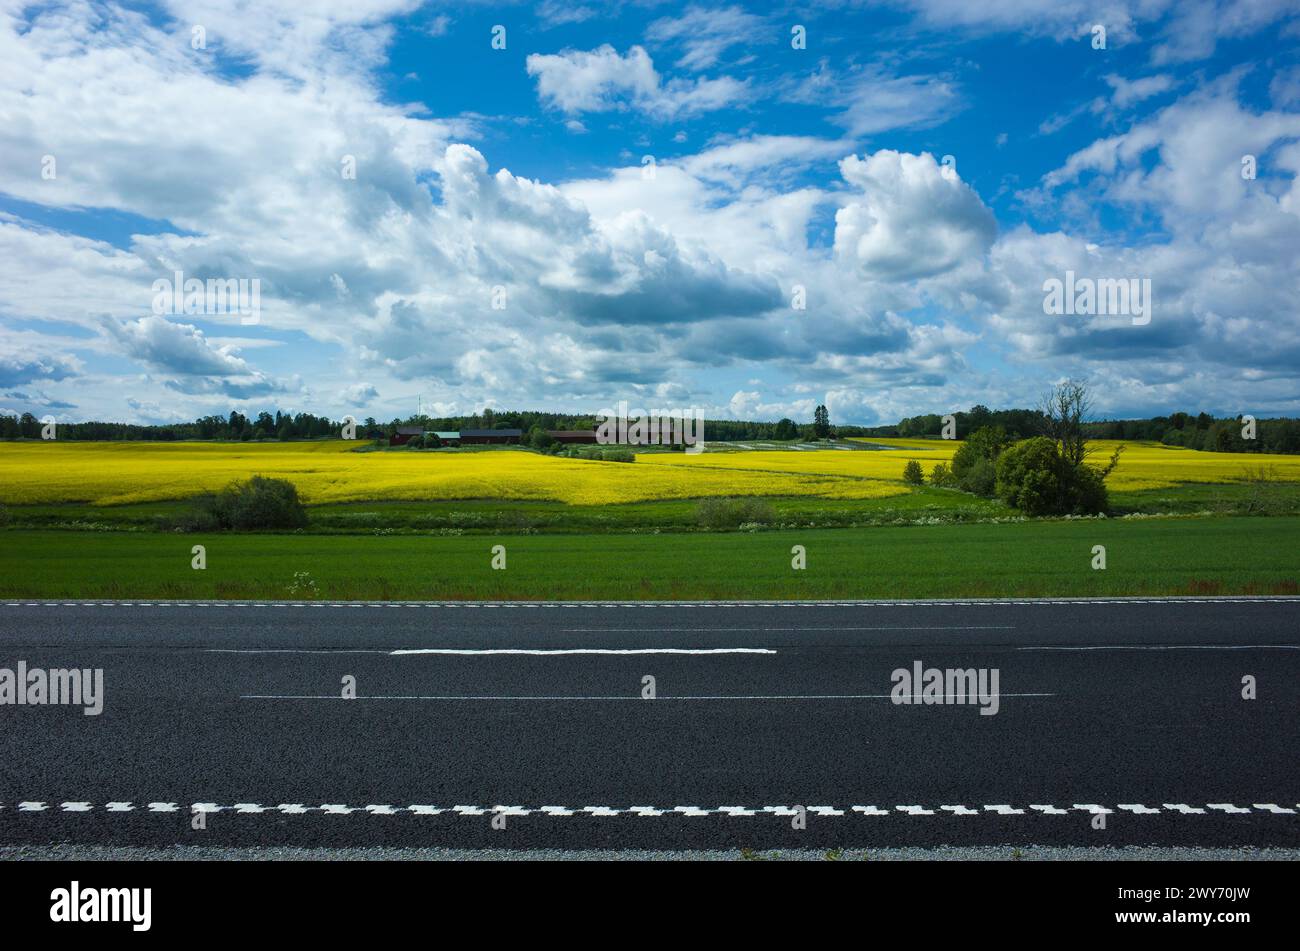 Paysage pittoresque avec des lignes de route asphaltée, champs verts et jaunes, ciel bleu avec des nuages pittoresques, Suède Banque D'Images